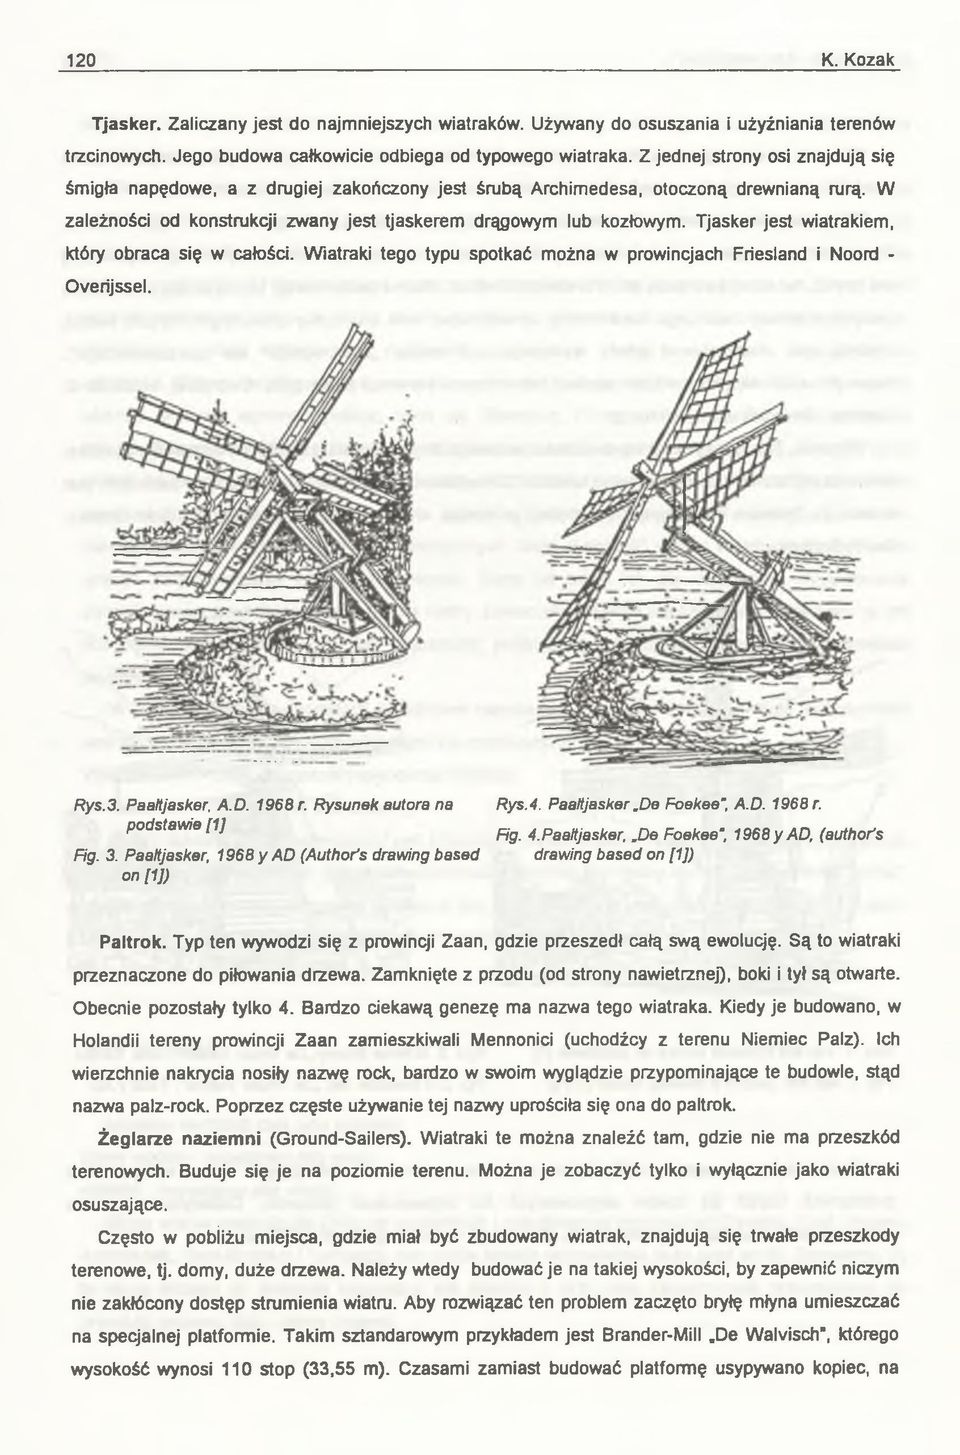 Tjasker jest wiatrakiem, który obraca się w całości. Wiatraki tego typu spotkać można w prowincjach Friesland i Noord - Overijssel. Rys.3. Paaltjasker, A.D. 1968 r.